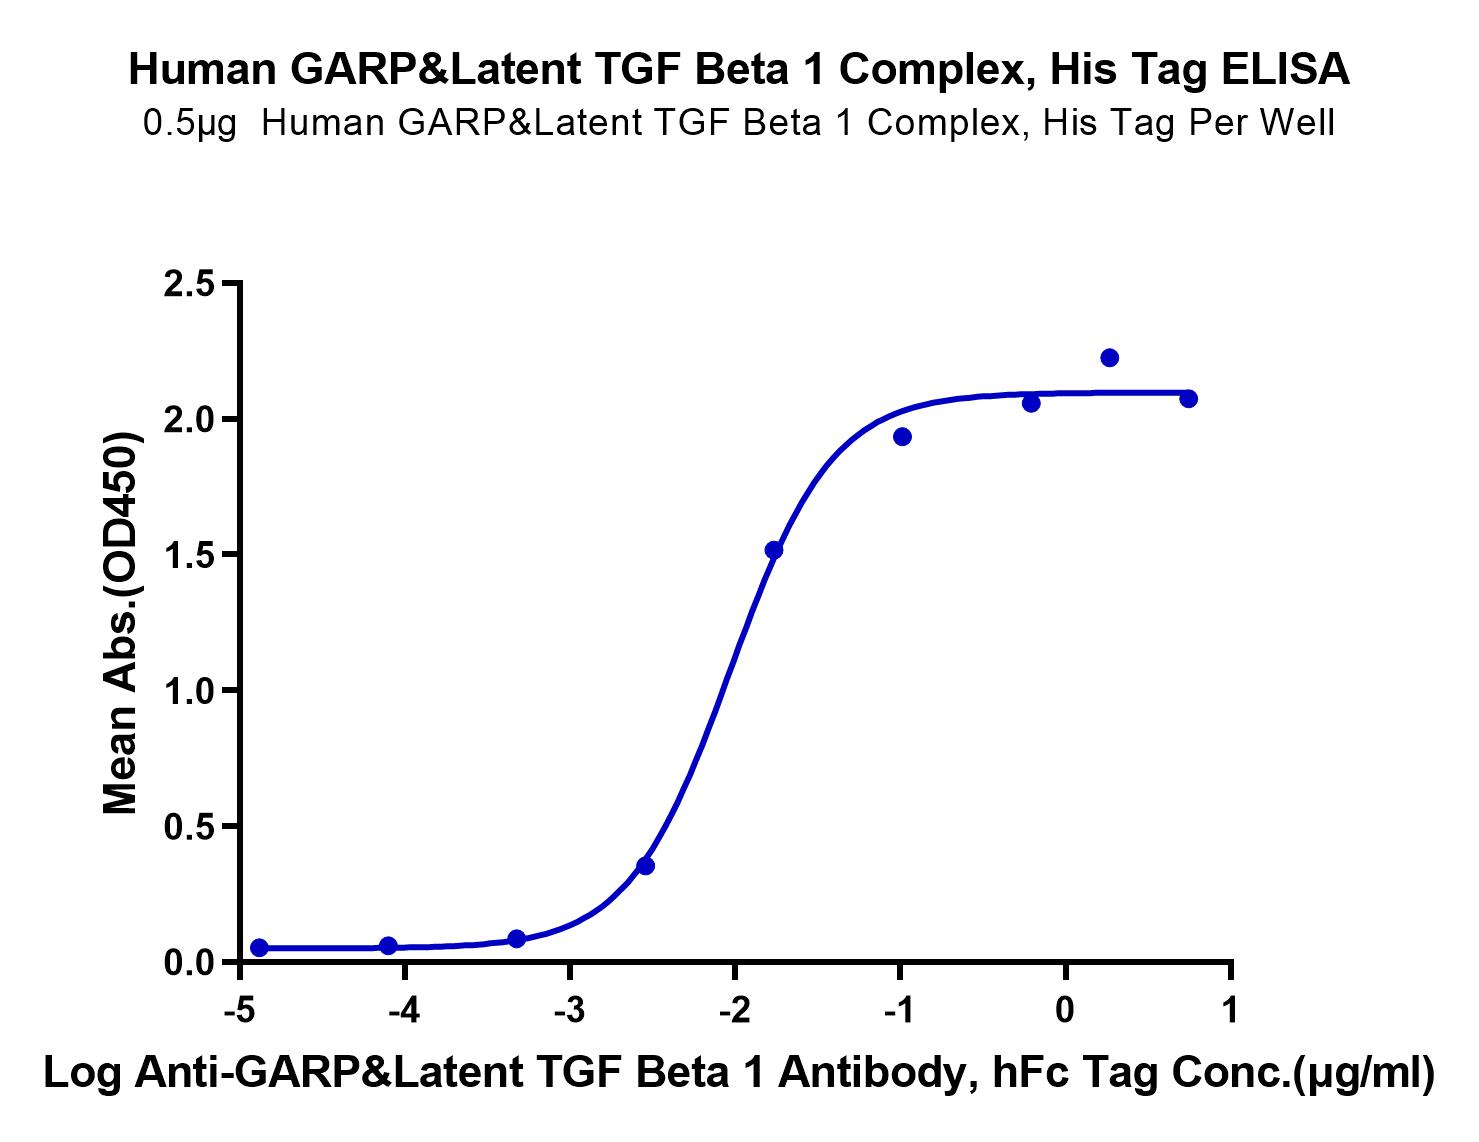 Human GARP&Latent TGF Beta 1 Complex Protein (LTP10642)